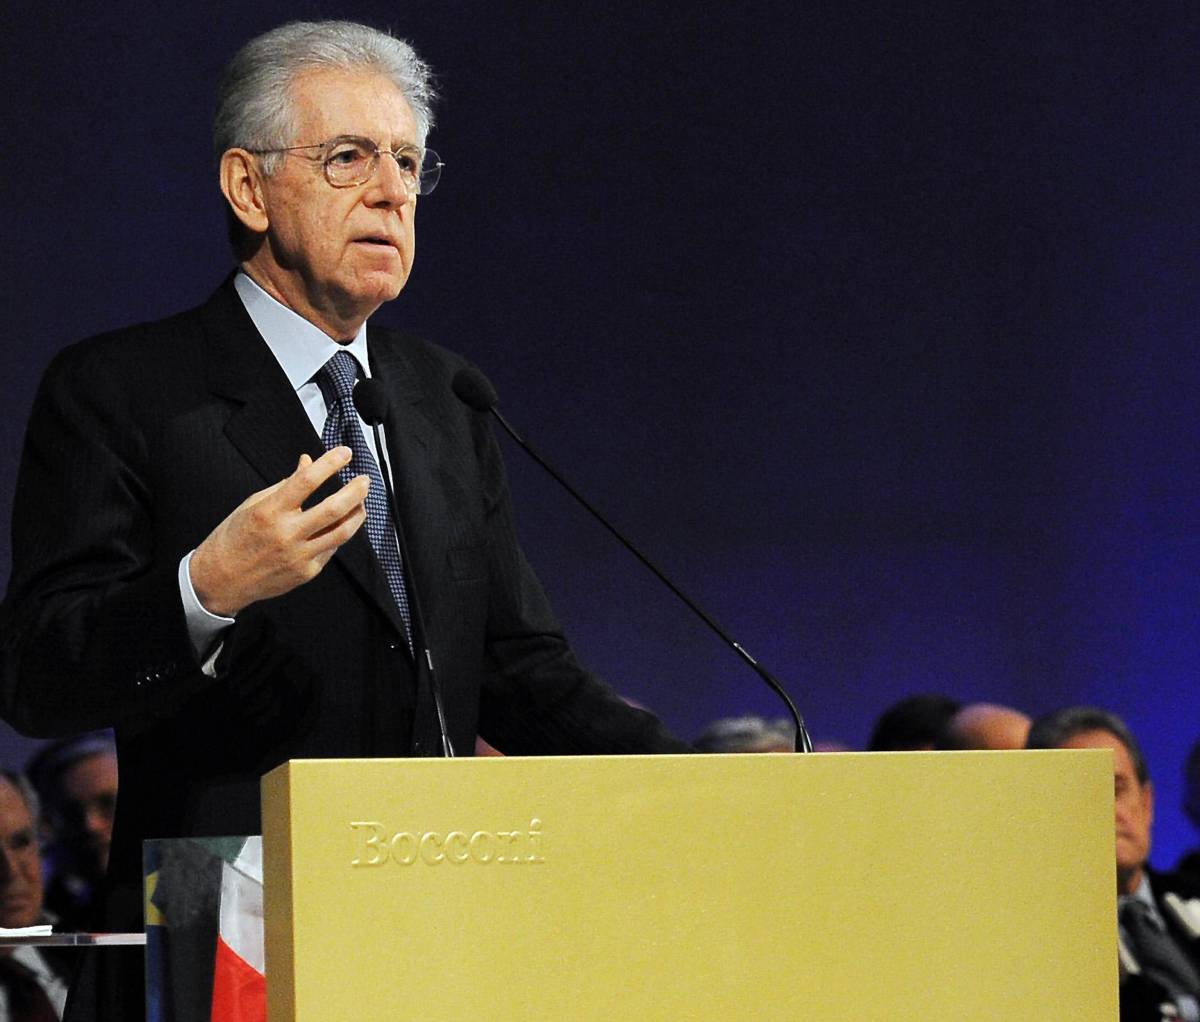 Evasione, l'appello di Monti: "Se tutti pagano meno tasse" E adesso lancia la task force